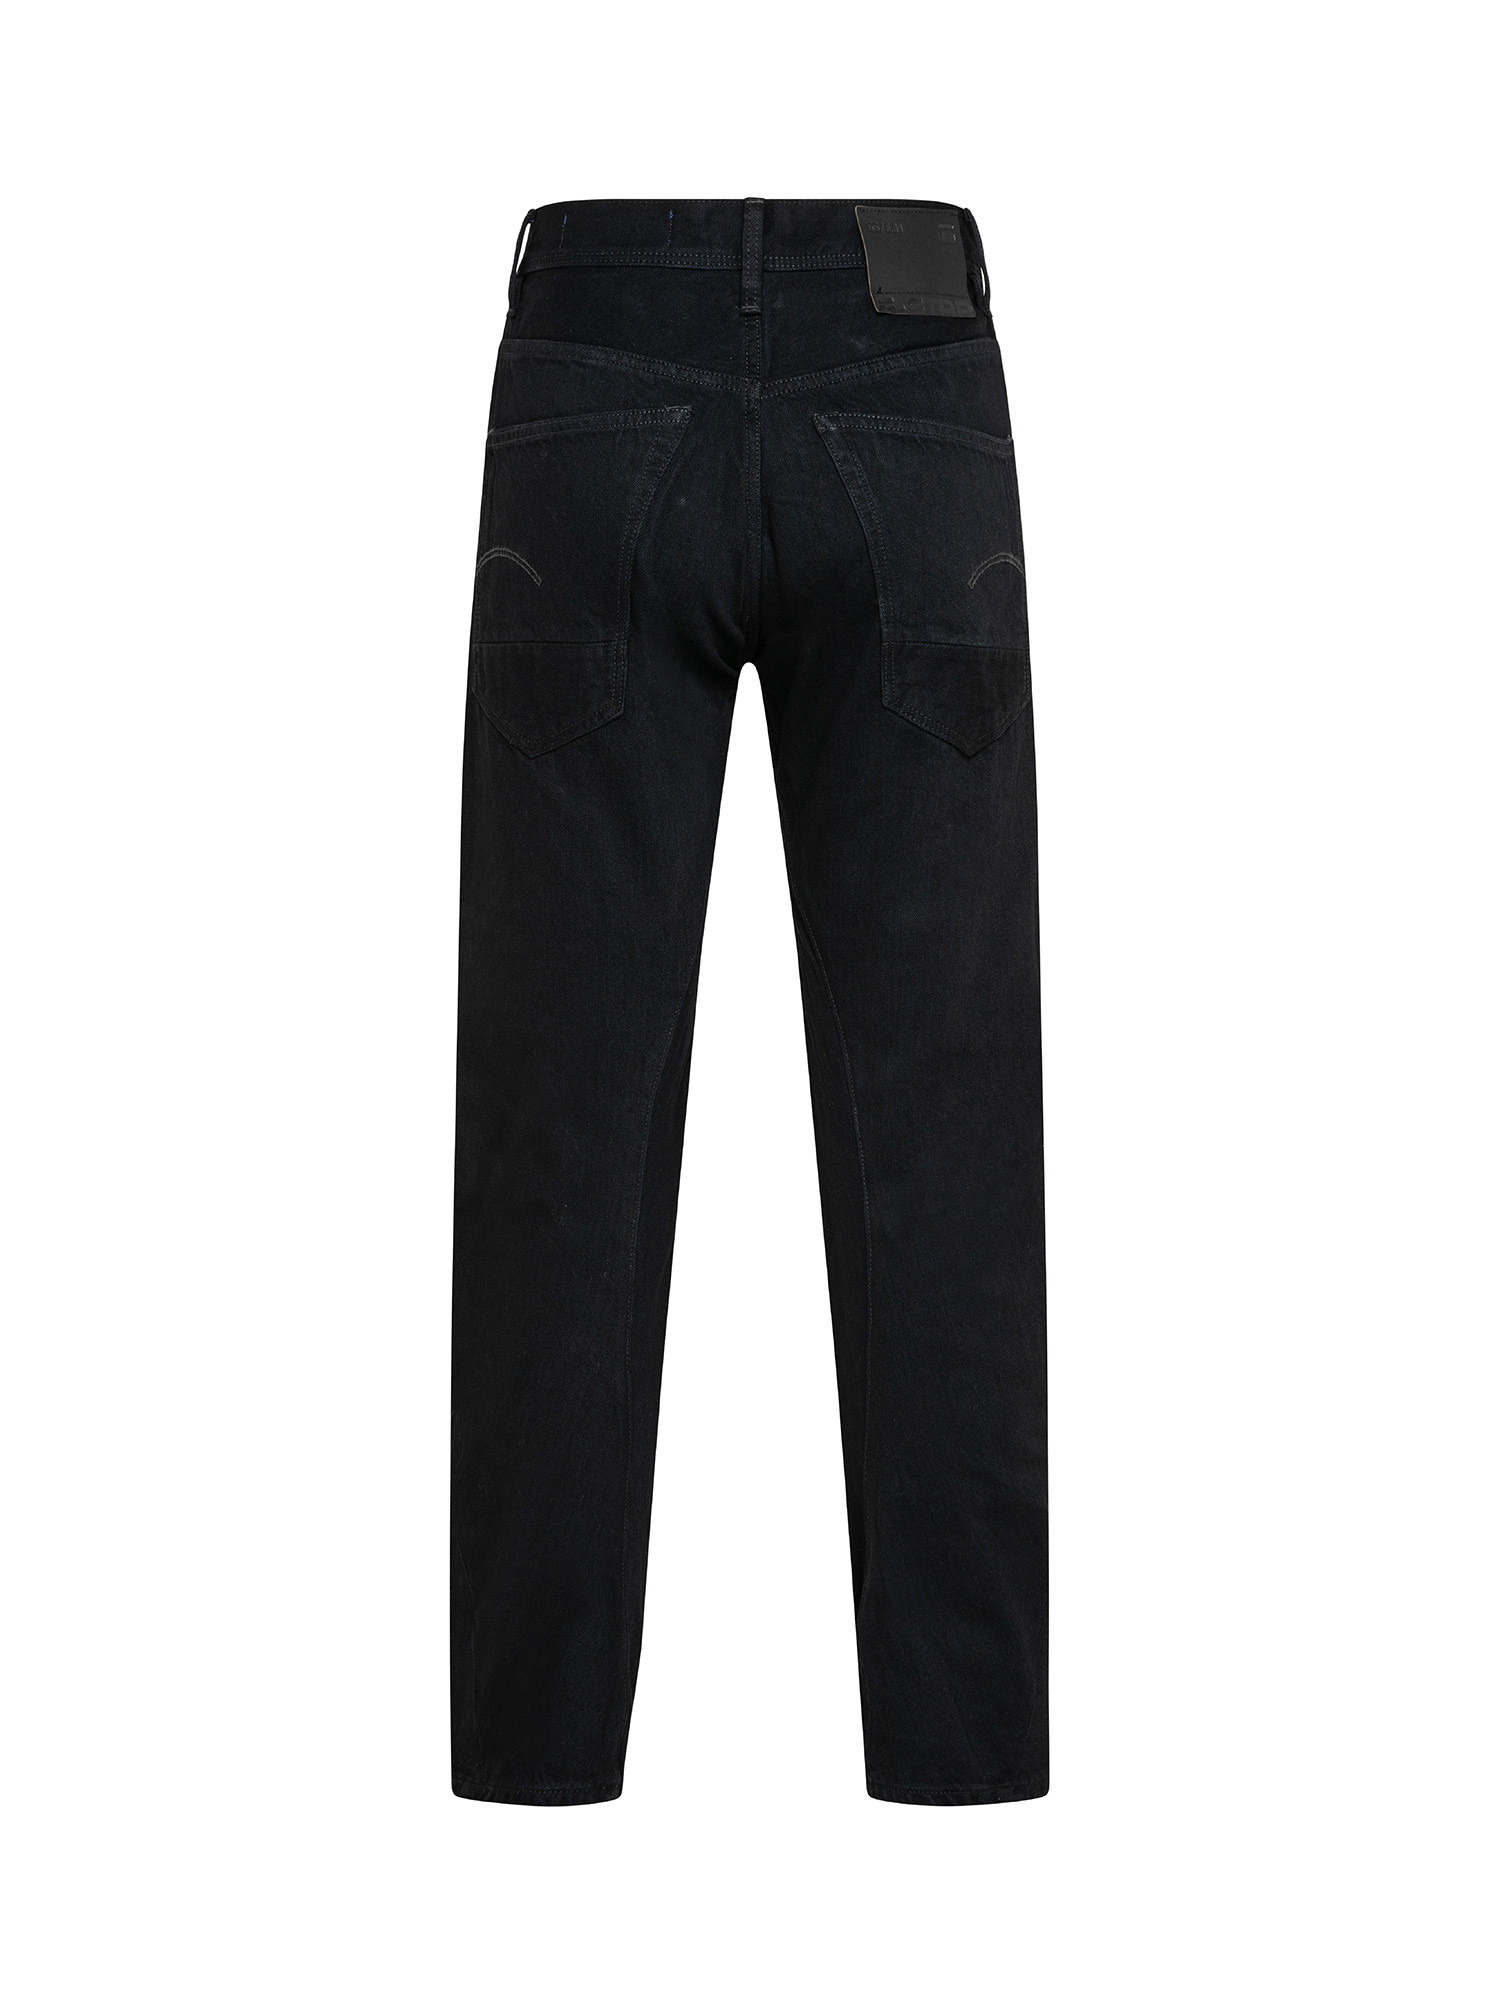 G-Star Five pocket jeans, Black, large image number 1